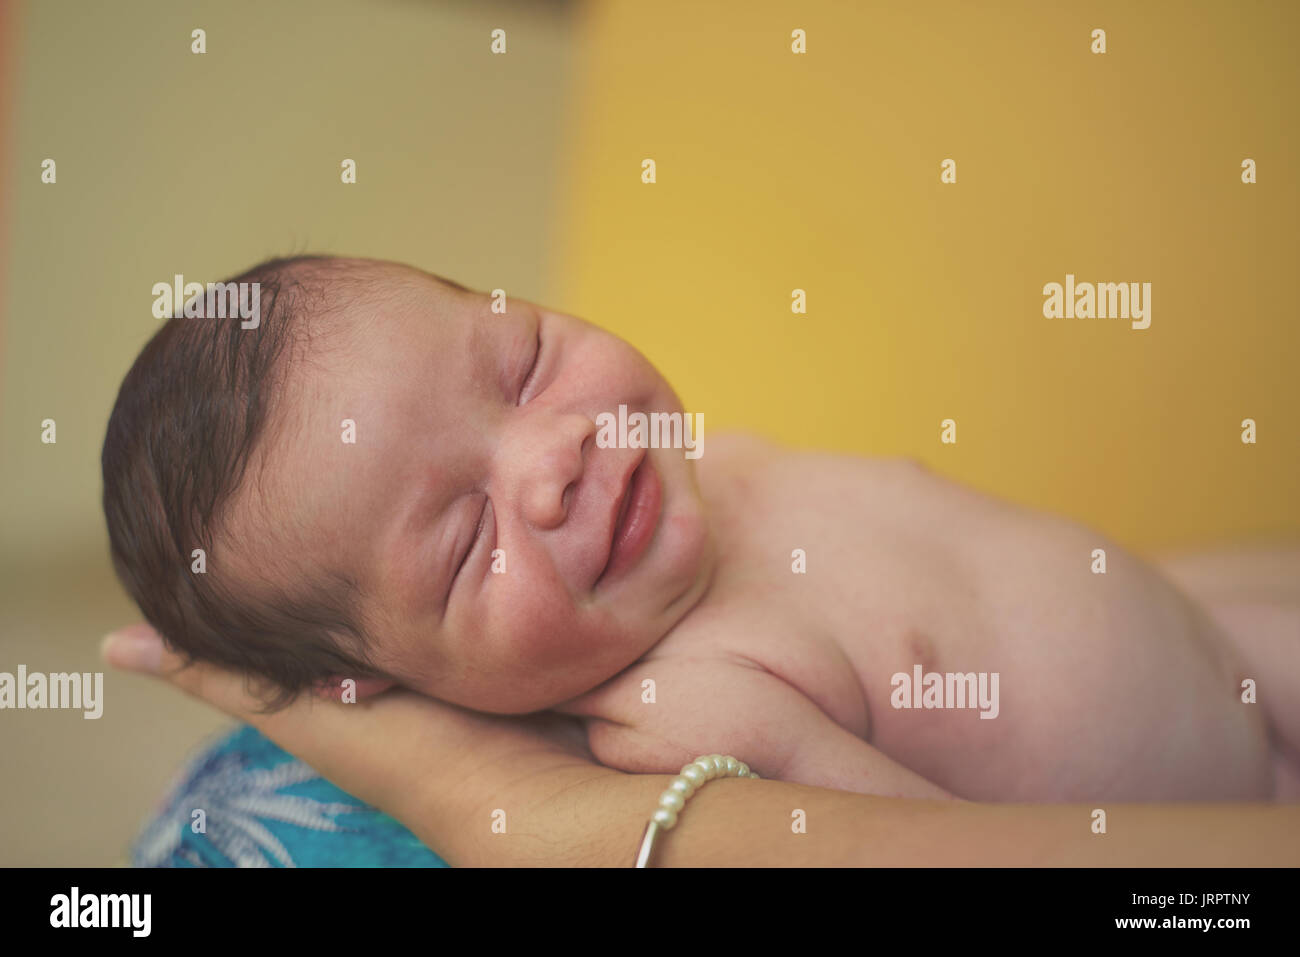 Sorridente new born baby dormire in mani genitore Foto Stock